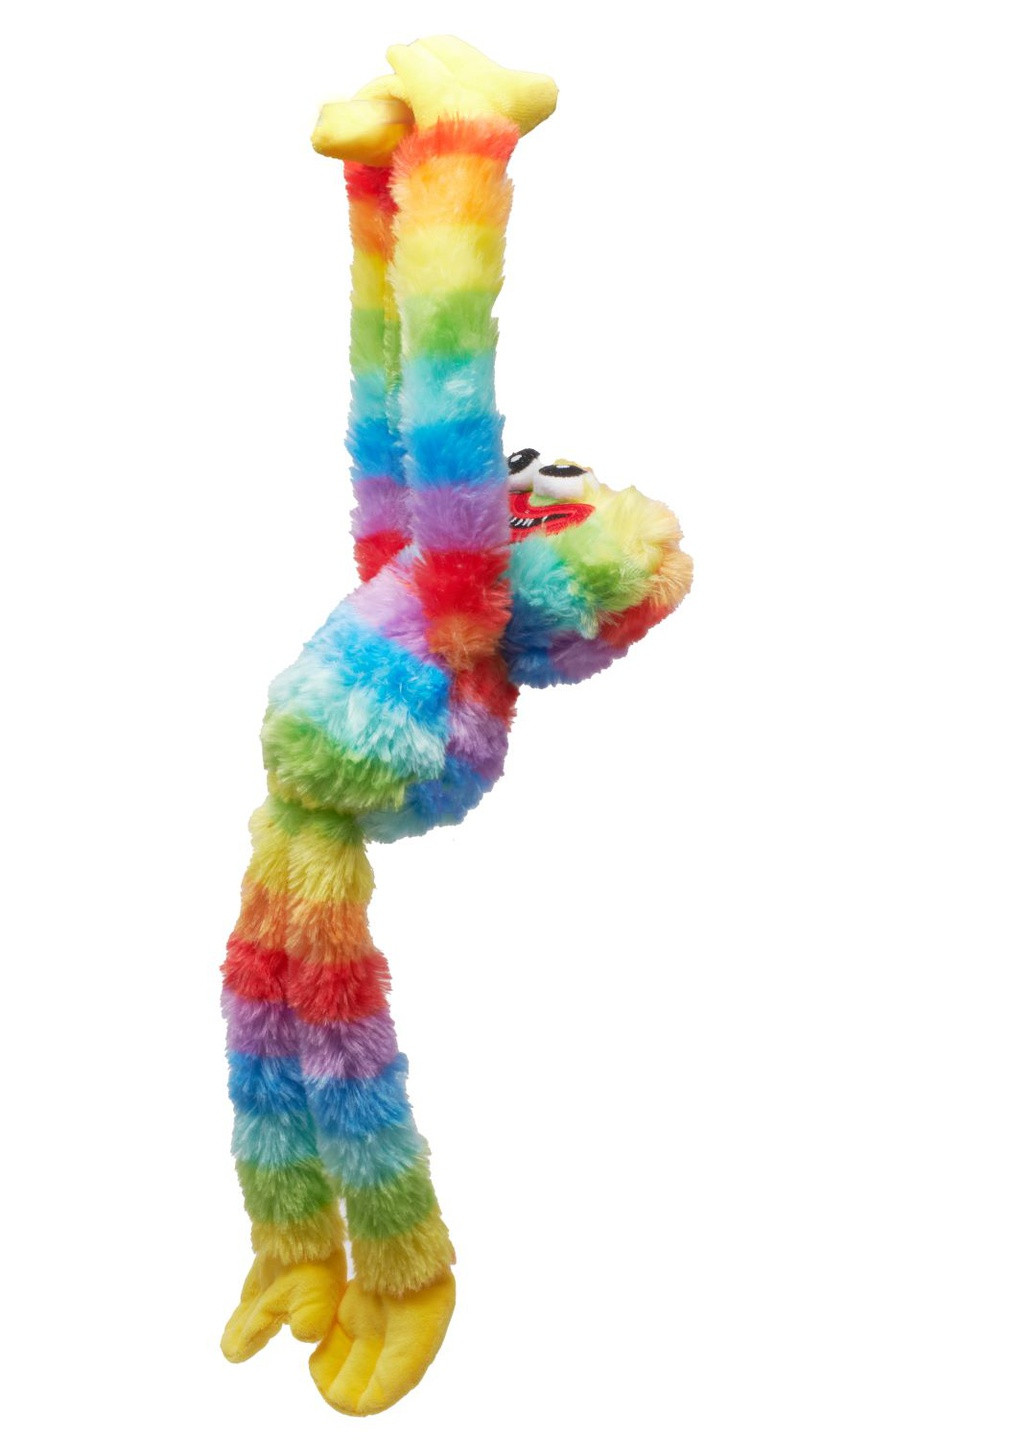 Мягкая игрушка обнимашка Хаги Ваги монстр из плюша 40 см с липучками на лапках Huggу-Wuggу Радужный Magic (257196498)